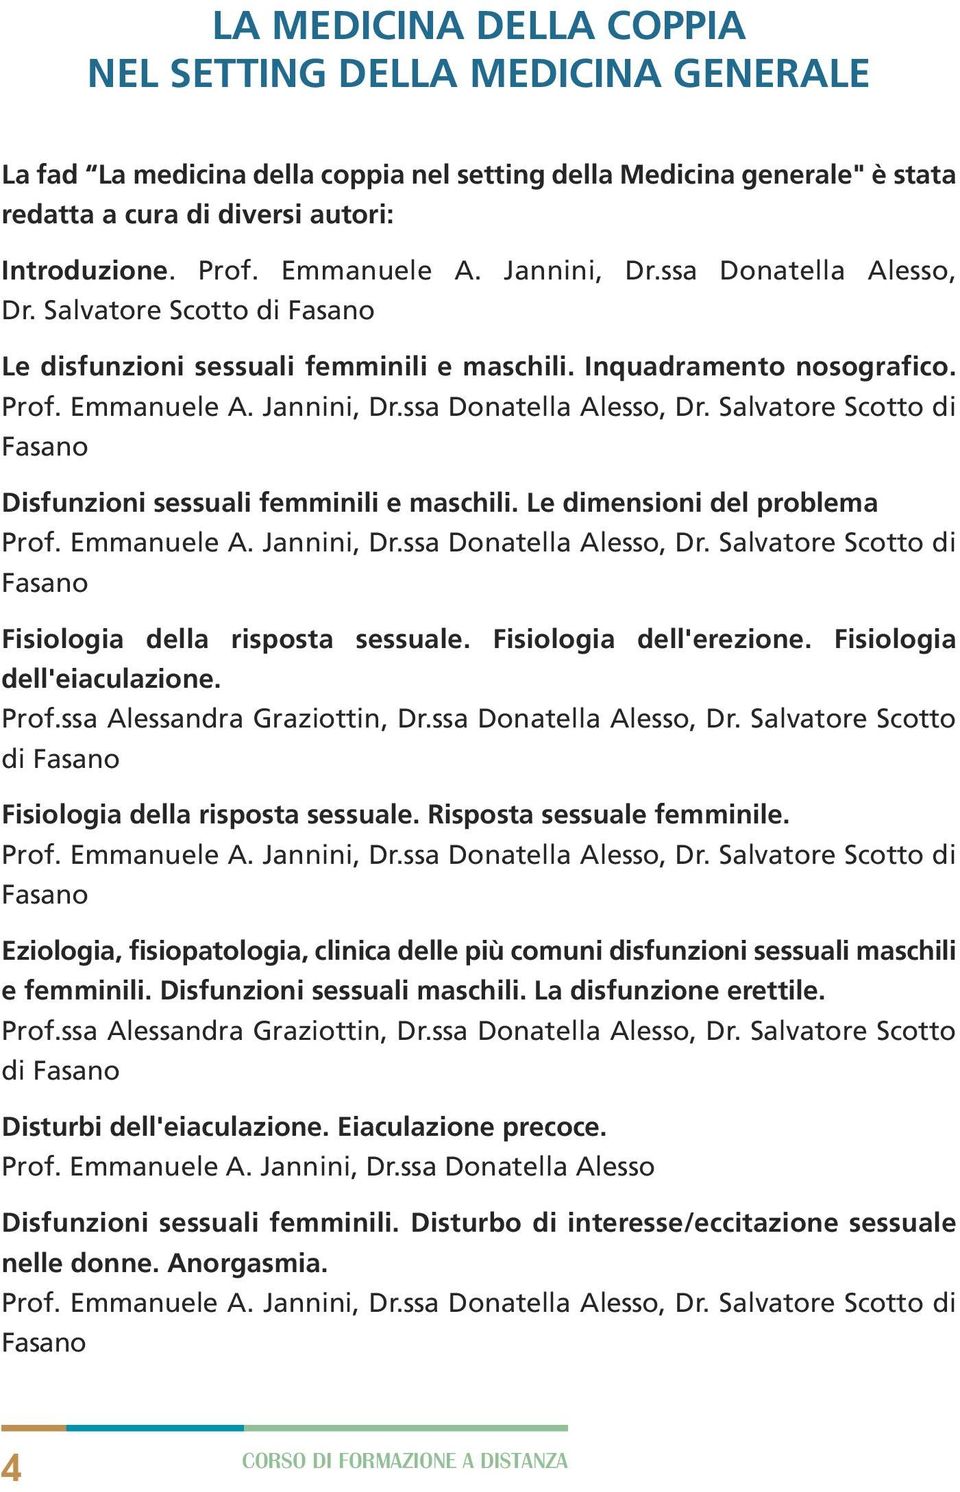 Le dimensioni del problema Prof. Emmanuele A. Jannini, Dr.ssa Donatella Alesso, Dr. Salvatore Scotto di Fasano Fisiologia della risposta sessuale. Fisiologia dell'erezione.